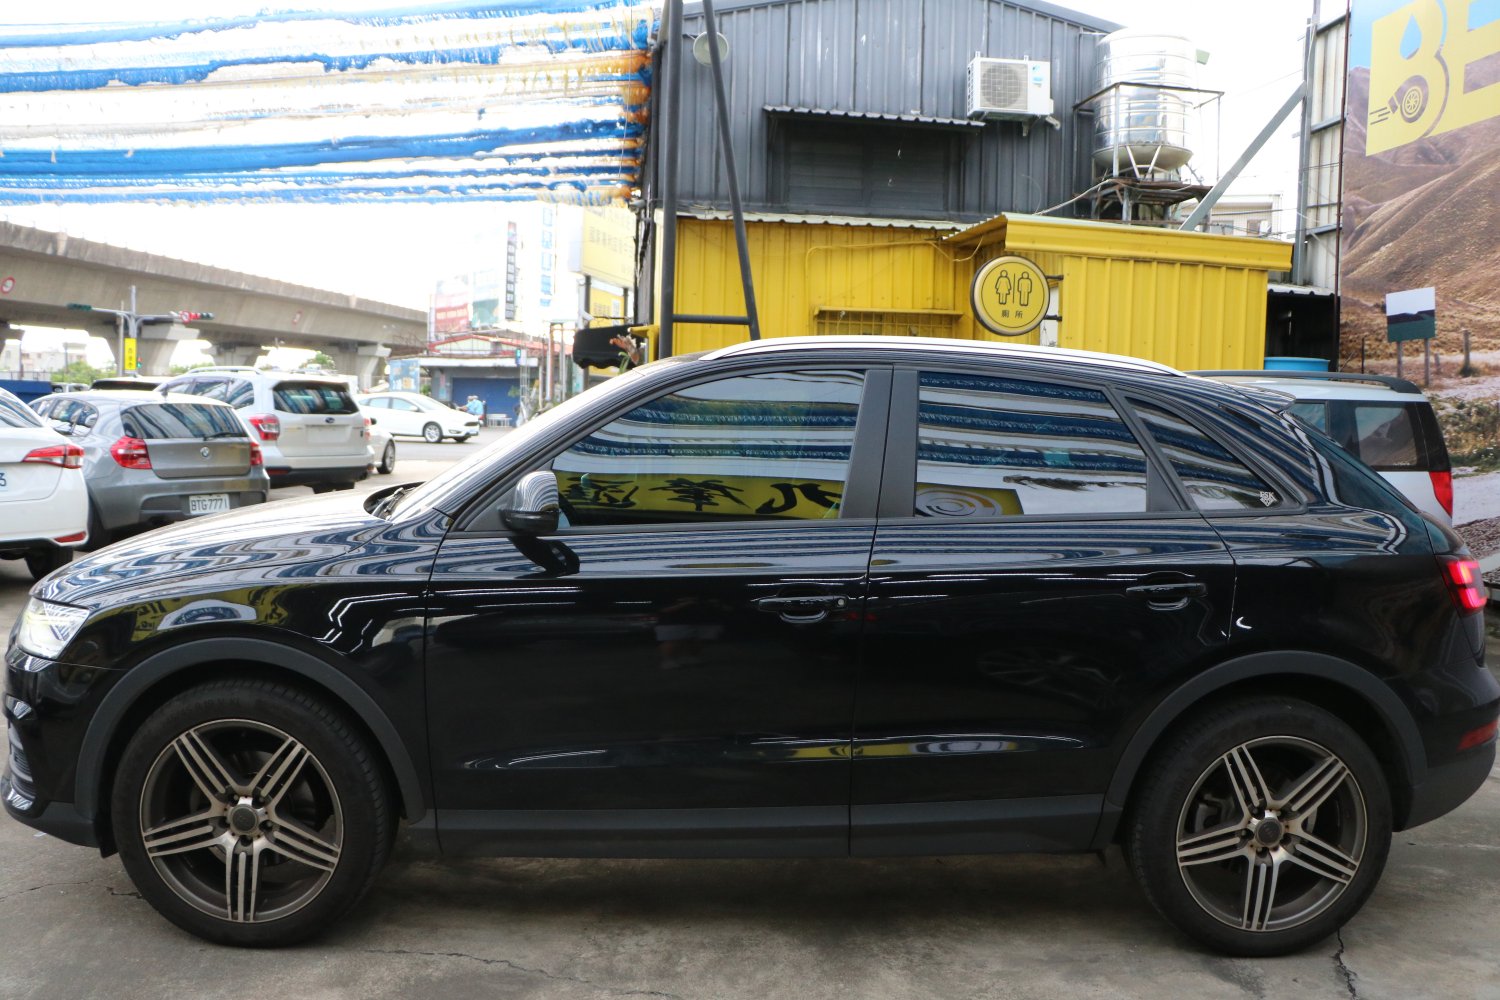 Audi 奧迪 ／ Q3 ／ 年 ／ 2016 年 Audi Q3 黑色 奧迪中古車 ／ 九州欣旺汽車 (台南)